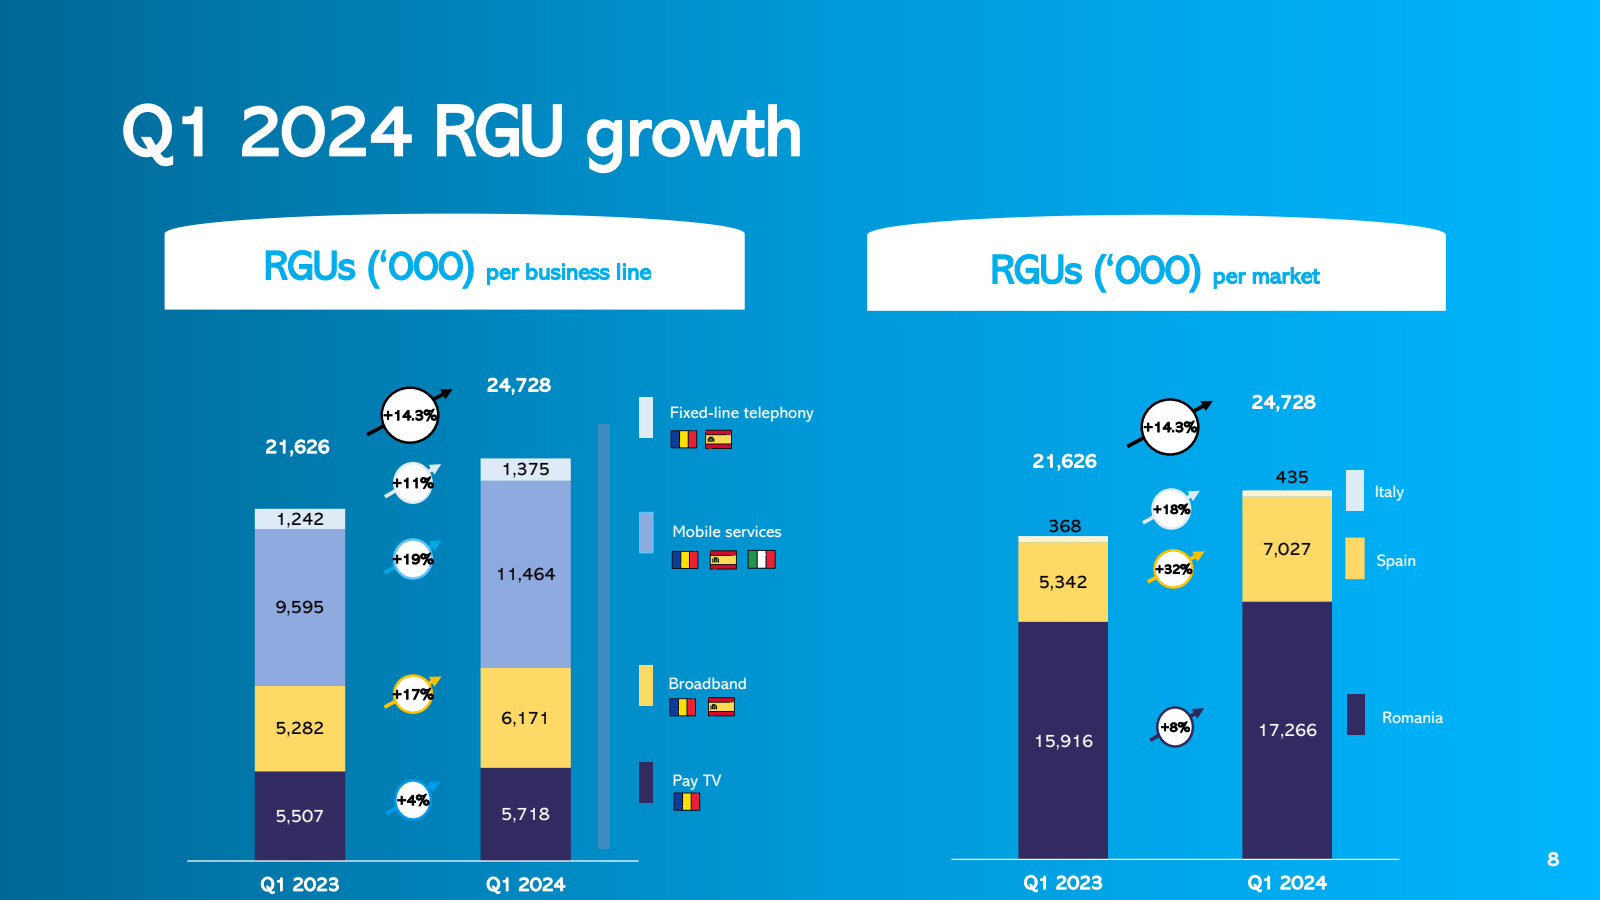 Q1 2024 RGU growth 
